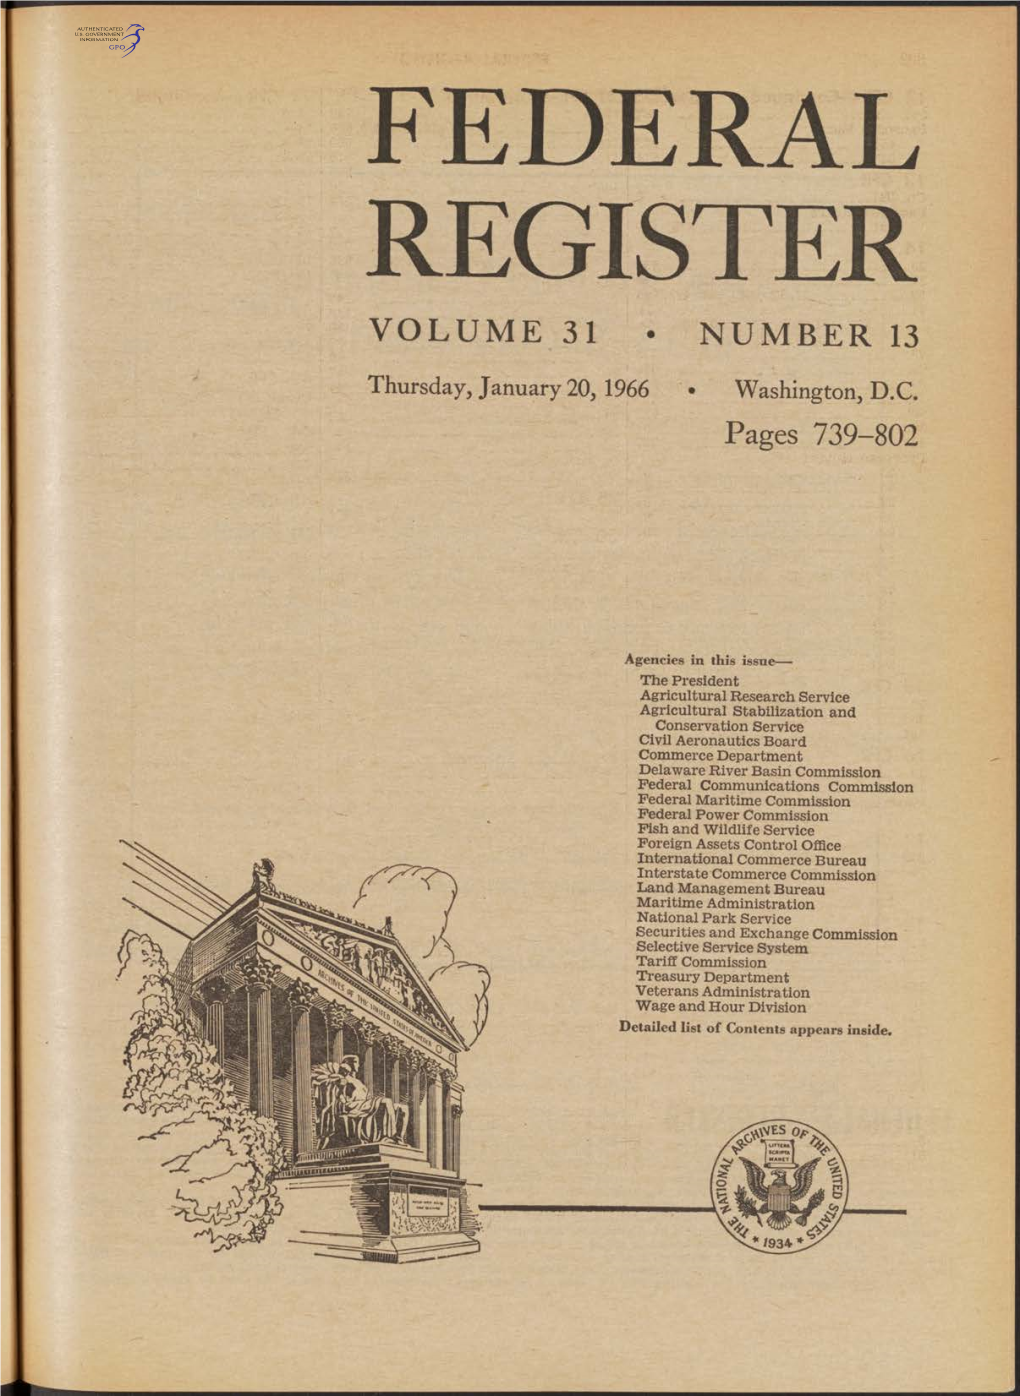 Federal Register Volume 31 • Number 13